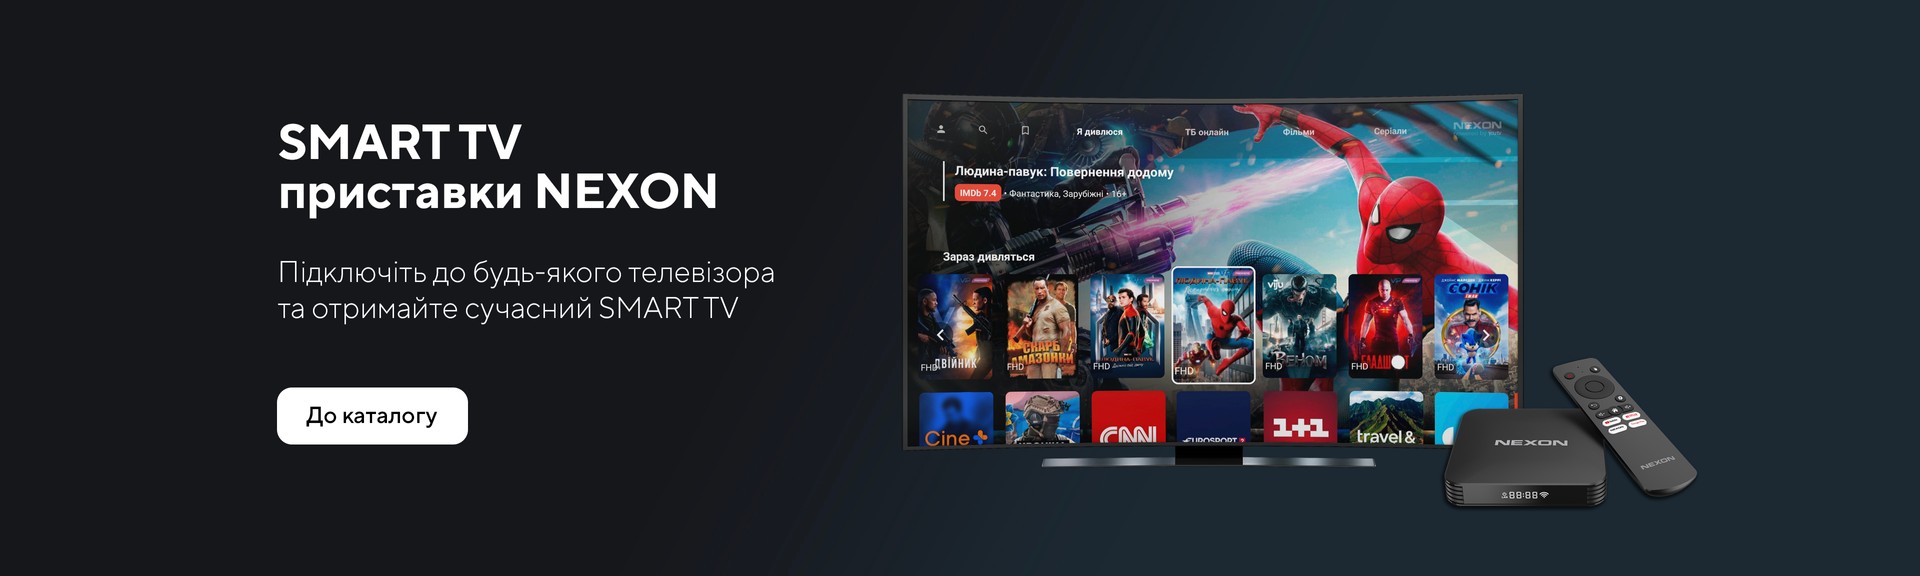 SMART TV приставки NEXON